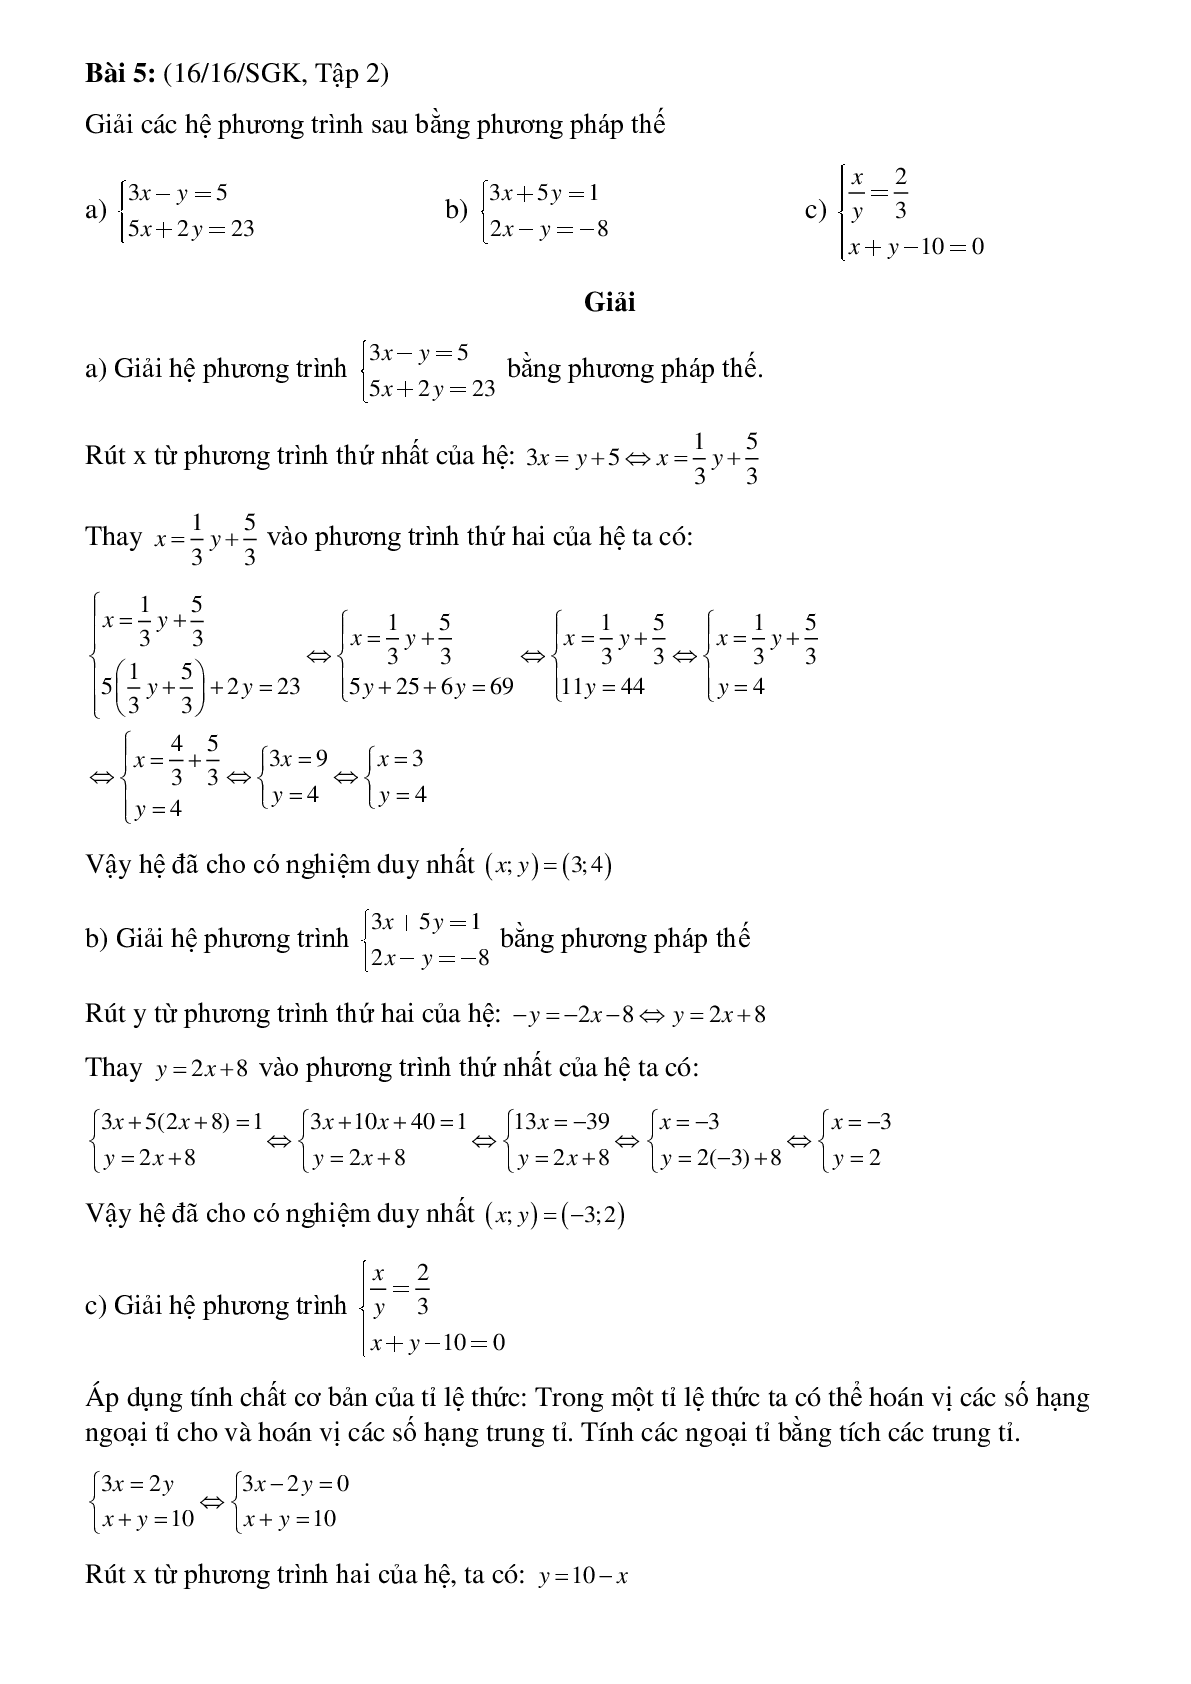 50 Bài tập Giải hệ phương trình bằng phương pháp thế (có đáp án)- Toán 9 (trang 7)